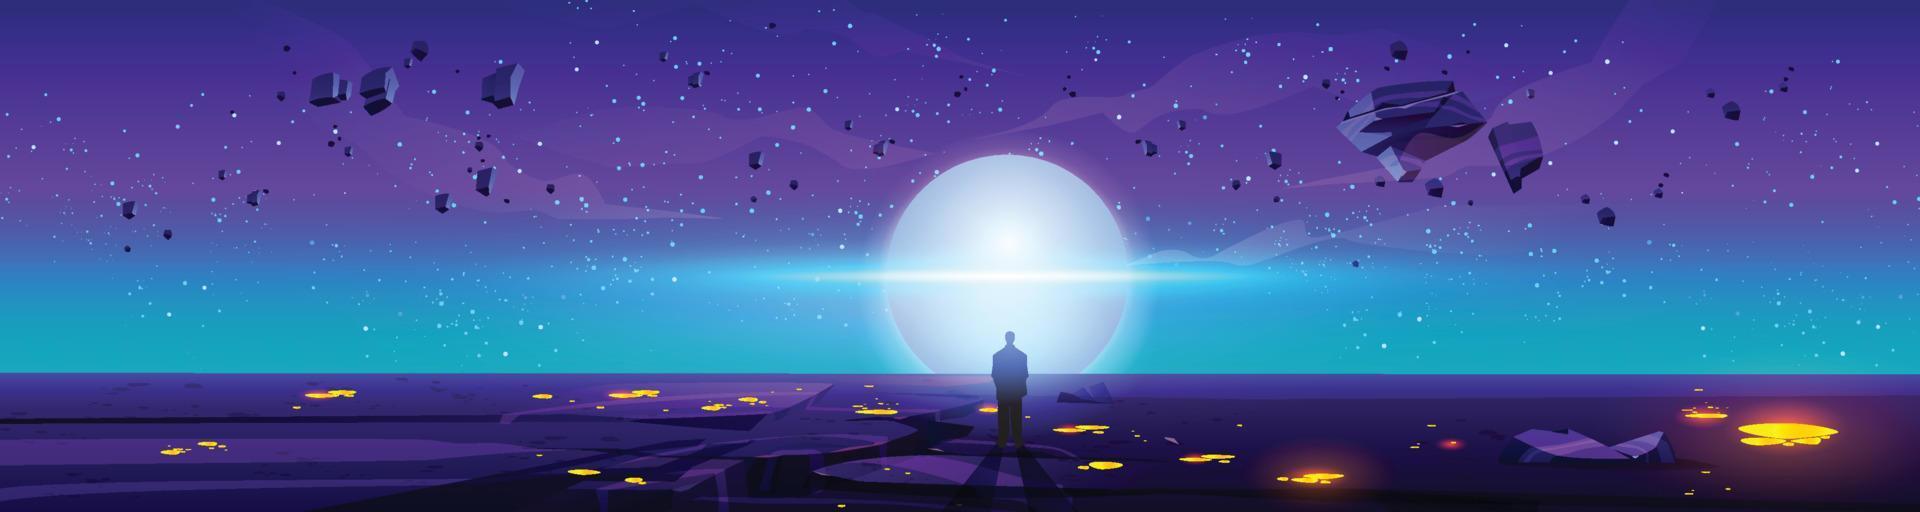 homem em pé em futurista planeta assistindo lua vetor ilustração arte Projeto